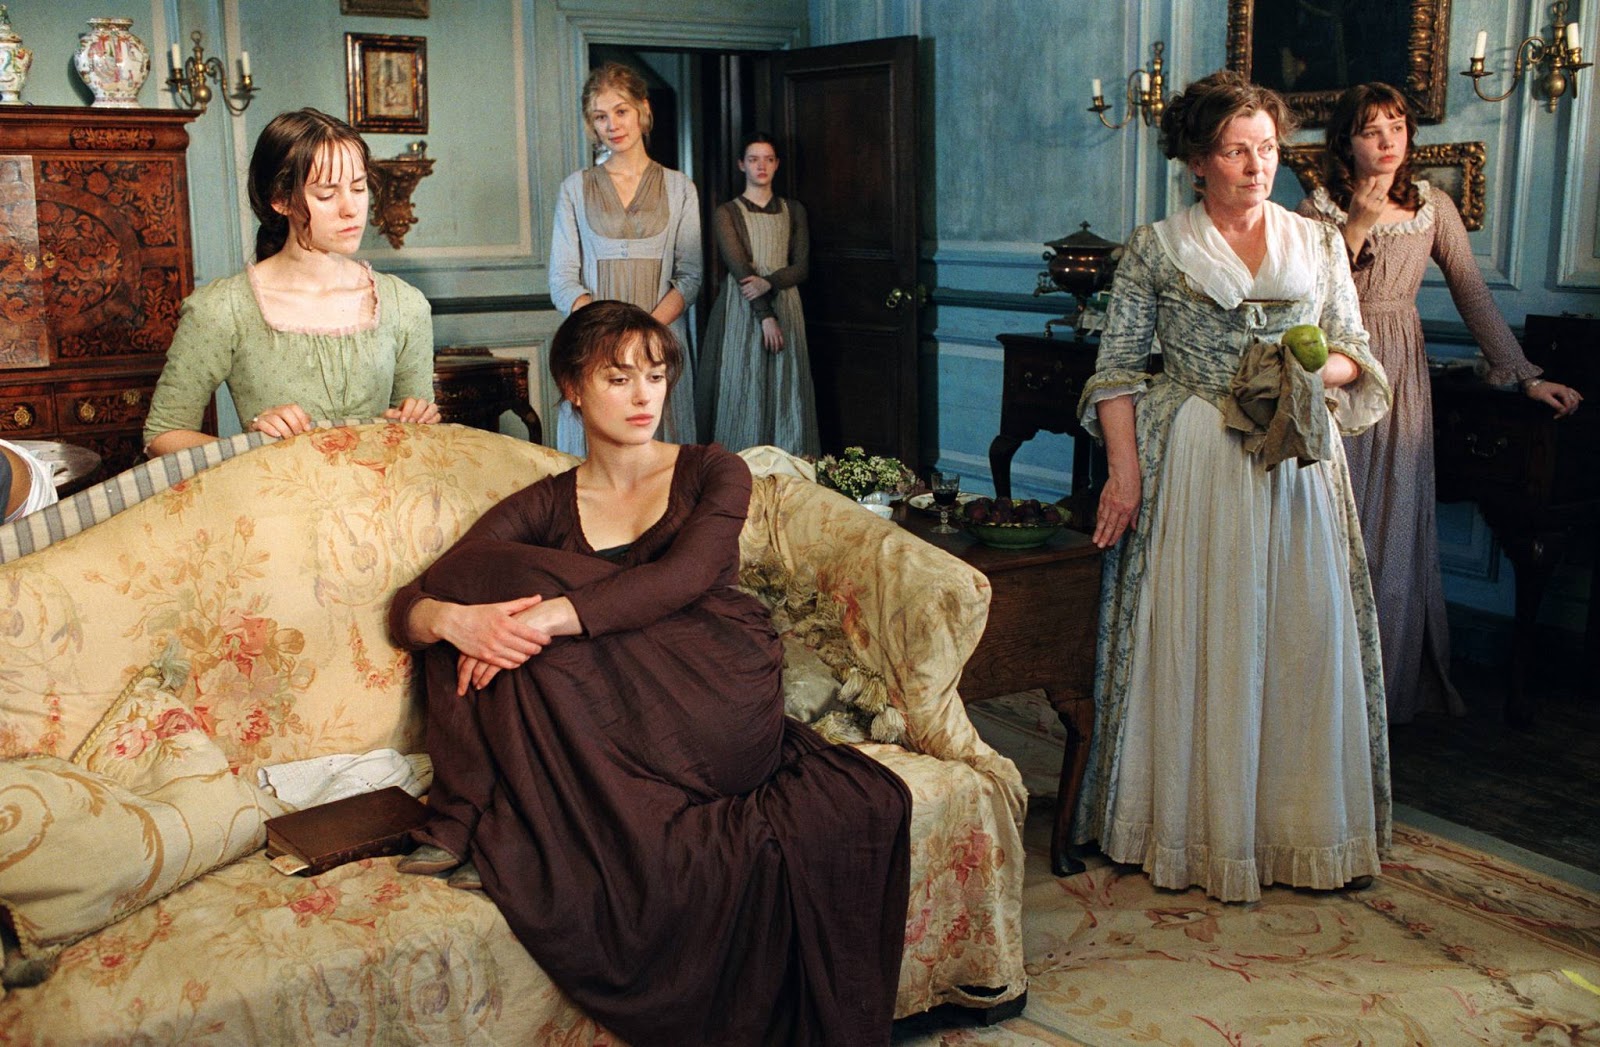 Na foto vemos cinco mulheres numa sala, com a protagonista, Elizabeth Bennet, na frente 